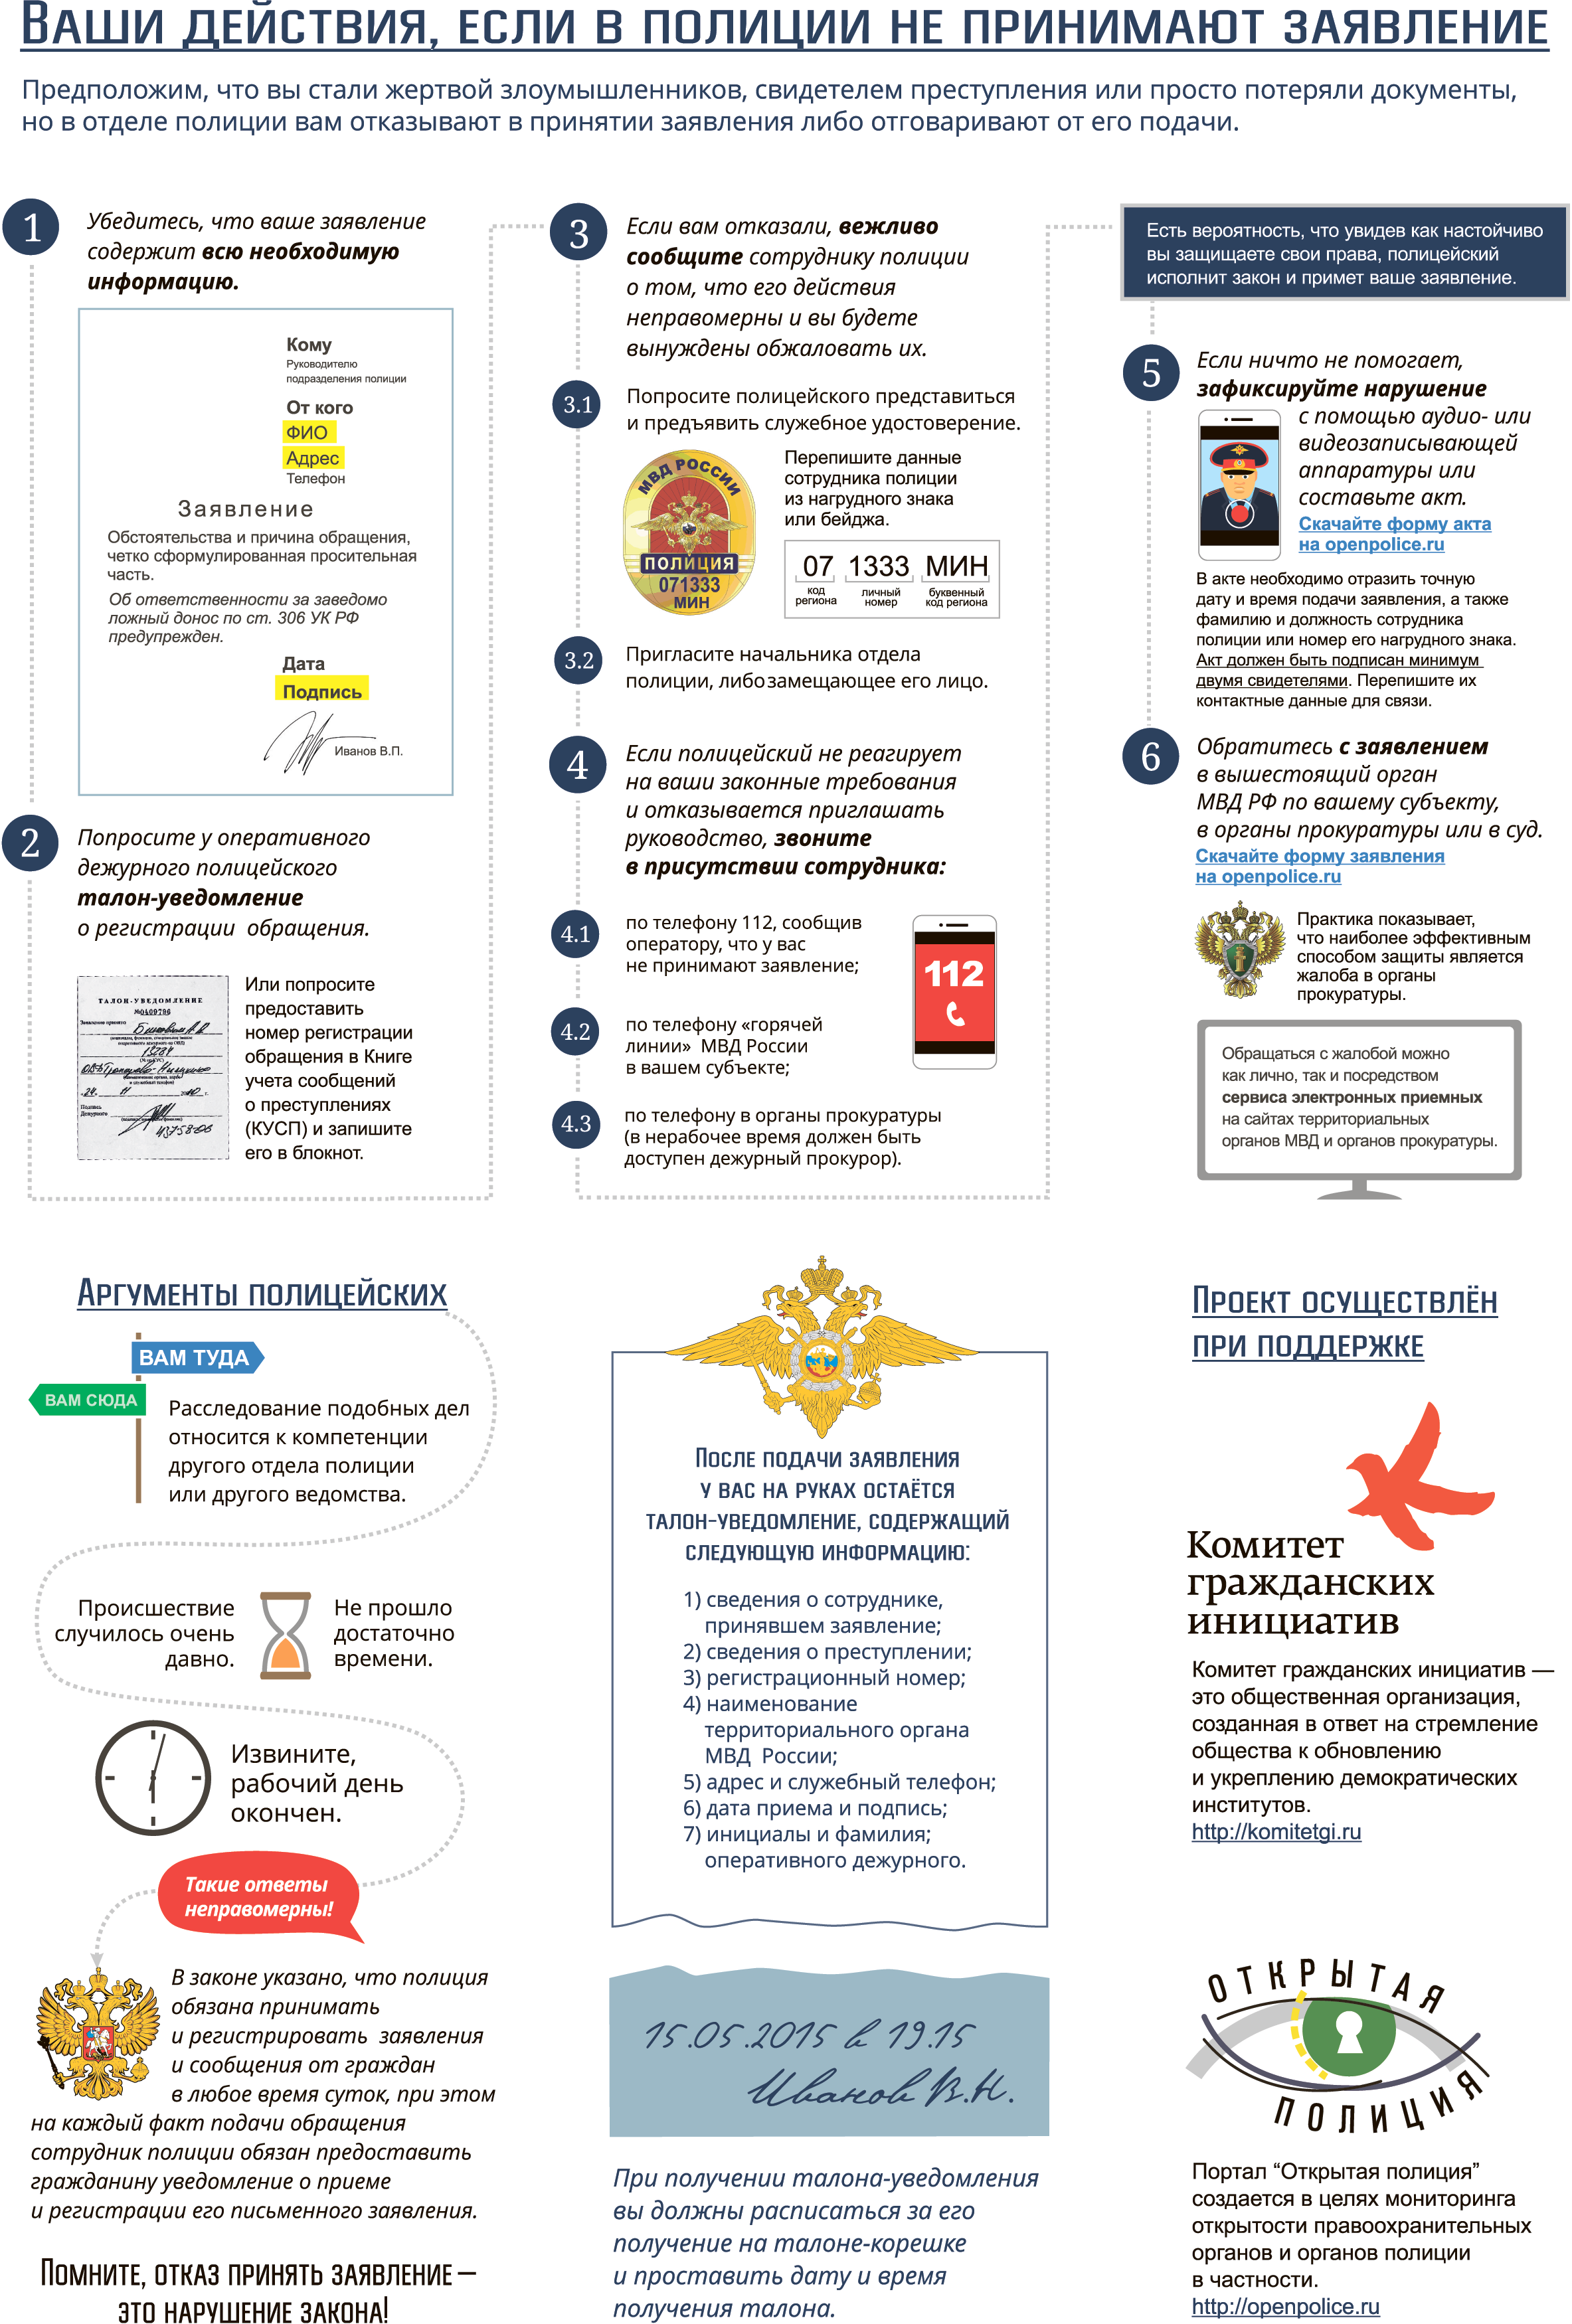 Инфографика "Что делать, если не принимают заявление в полицию?"